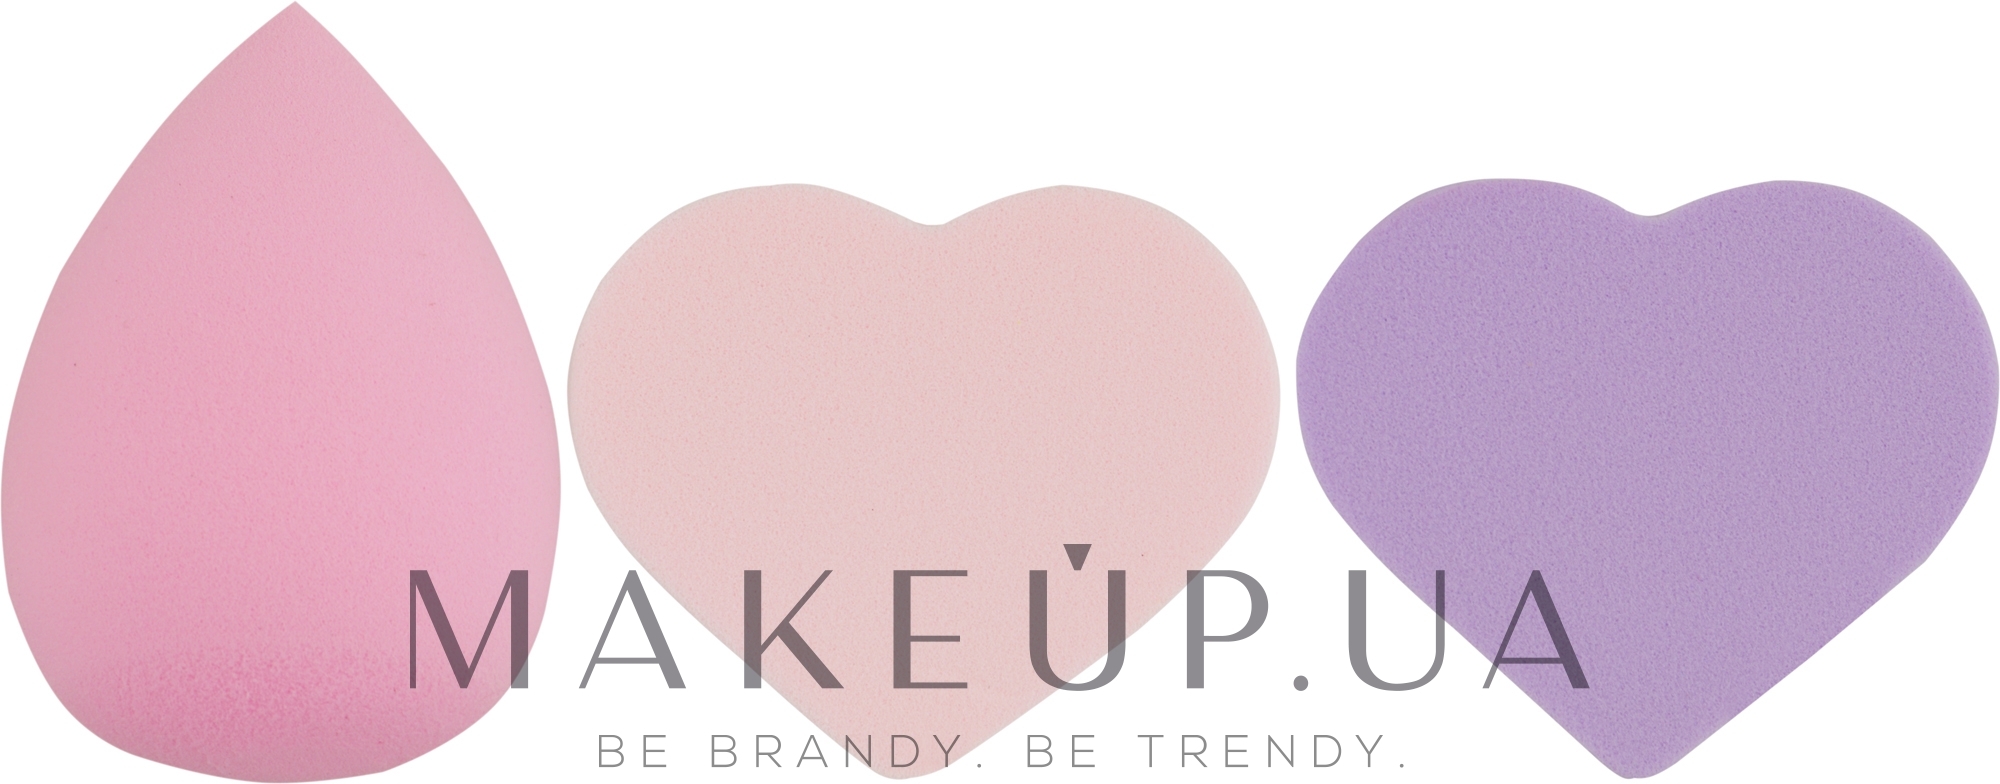 Набор спонжей для макияжа Beauty Blender, капля + 2 сердце, MIX (фиолетовый + розовый + светло-розовый) - Puffic Fashion PF-229 — фото 3шт